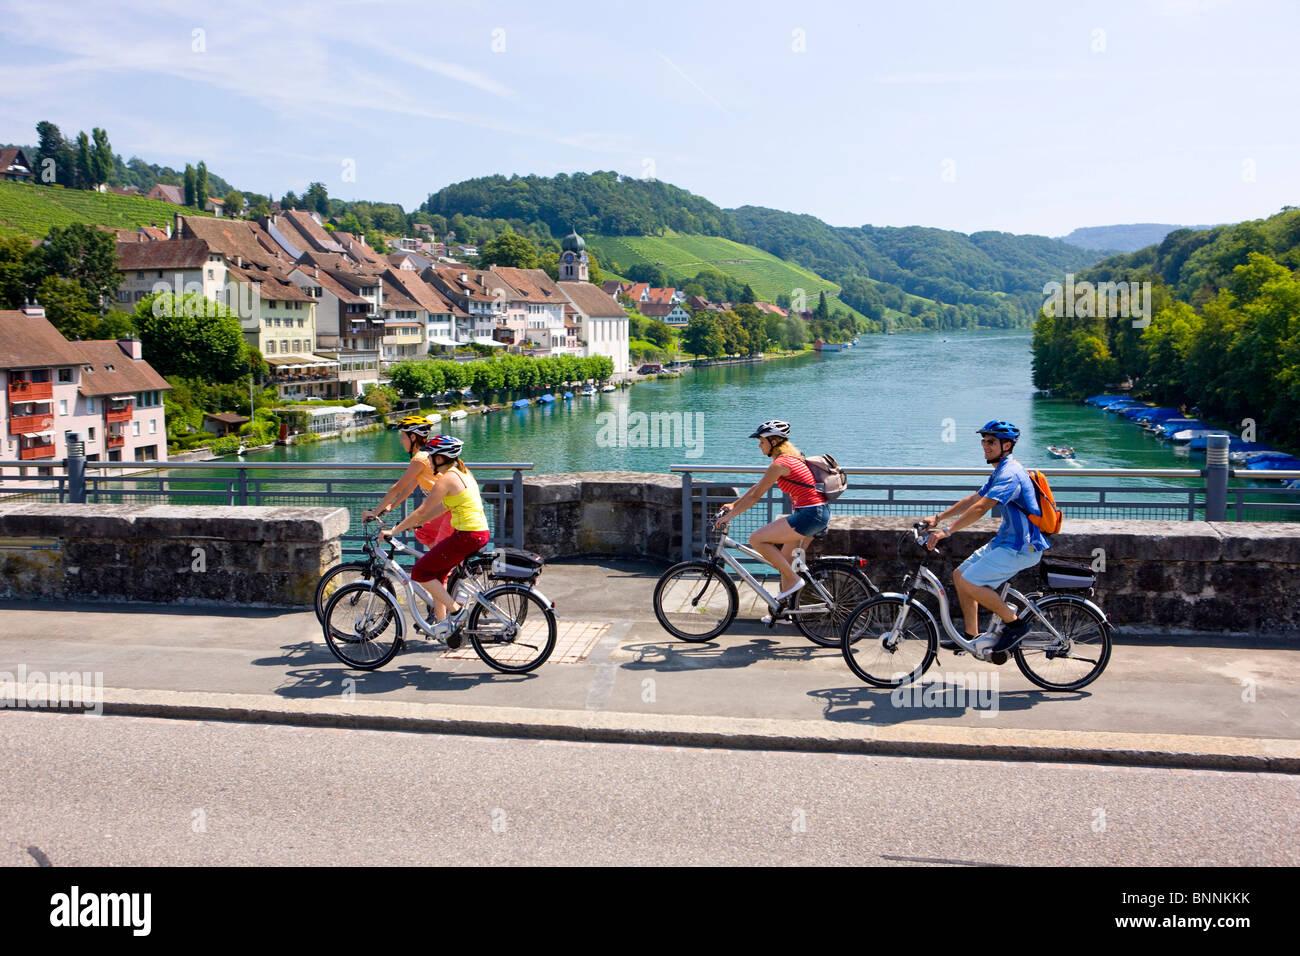 Schweiz fahren eine Gruppe vier Rhein Kanton Zürich Rad Fahrrad Fahrrad  Fahrräder Bike Radtour ein Fahrrad Swiss Trails Stockfotografie - Alamy